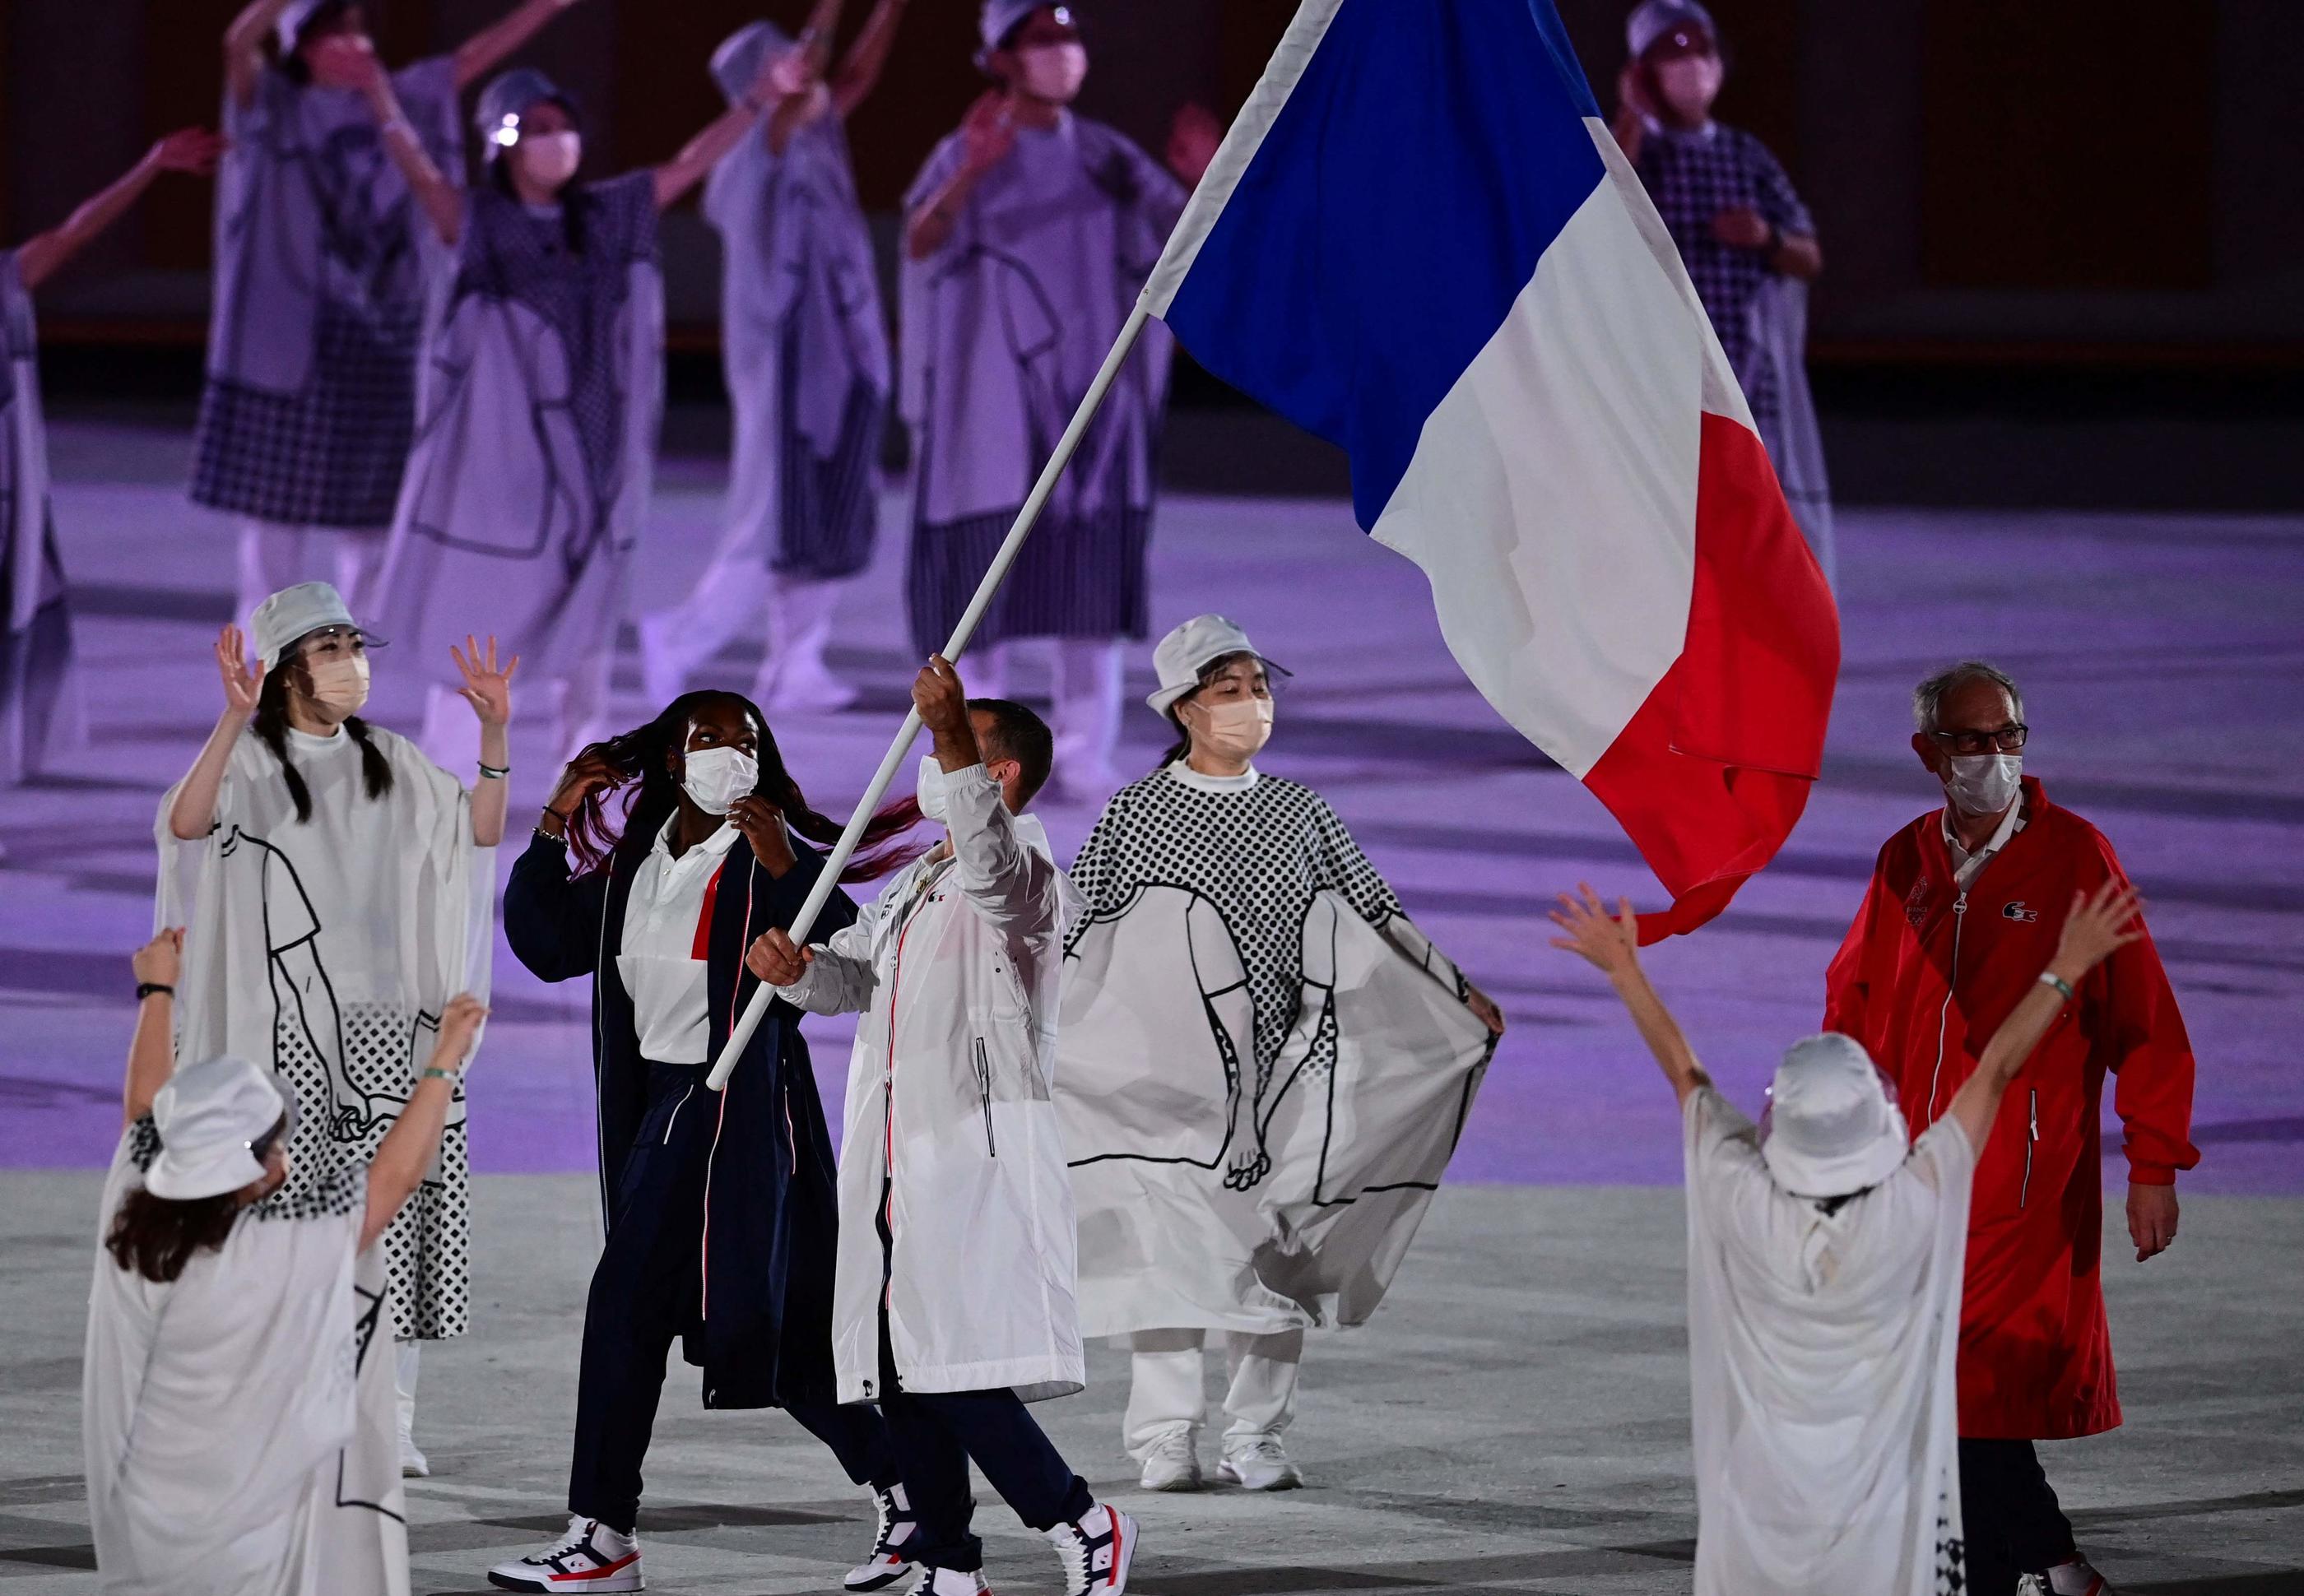 Clarisse Agbégnénou et Samir Ait Saïd étaient porte-drapeau lors de la cérémonie d'ouverture des Jeux de Tokyo. AFP/Franck Fife